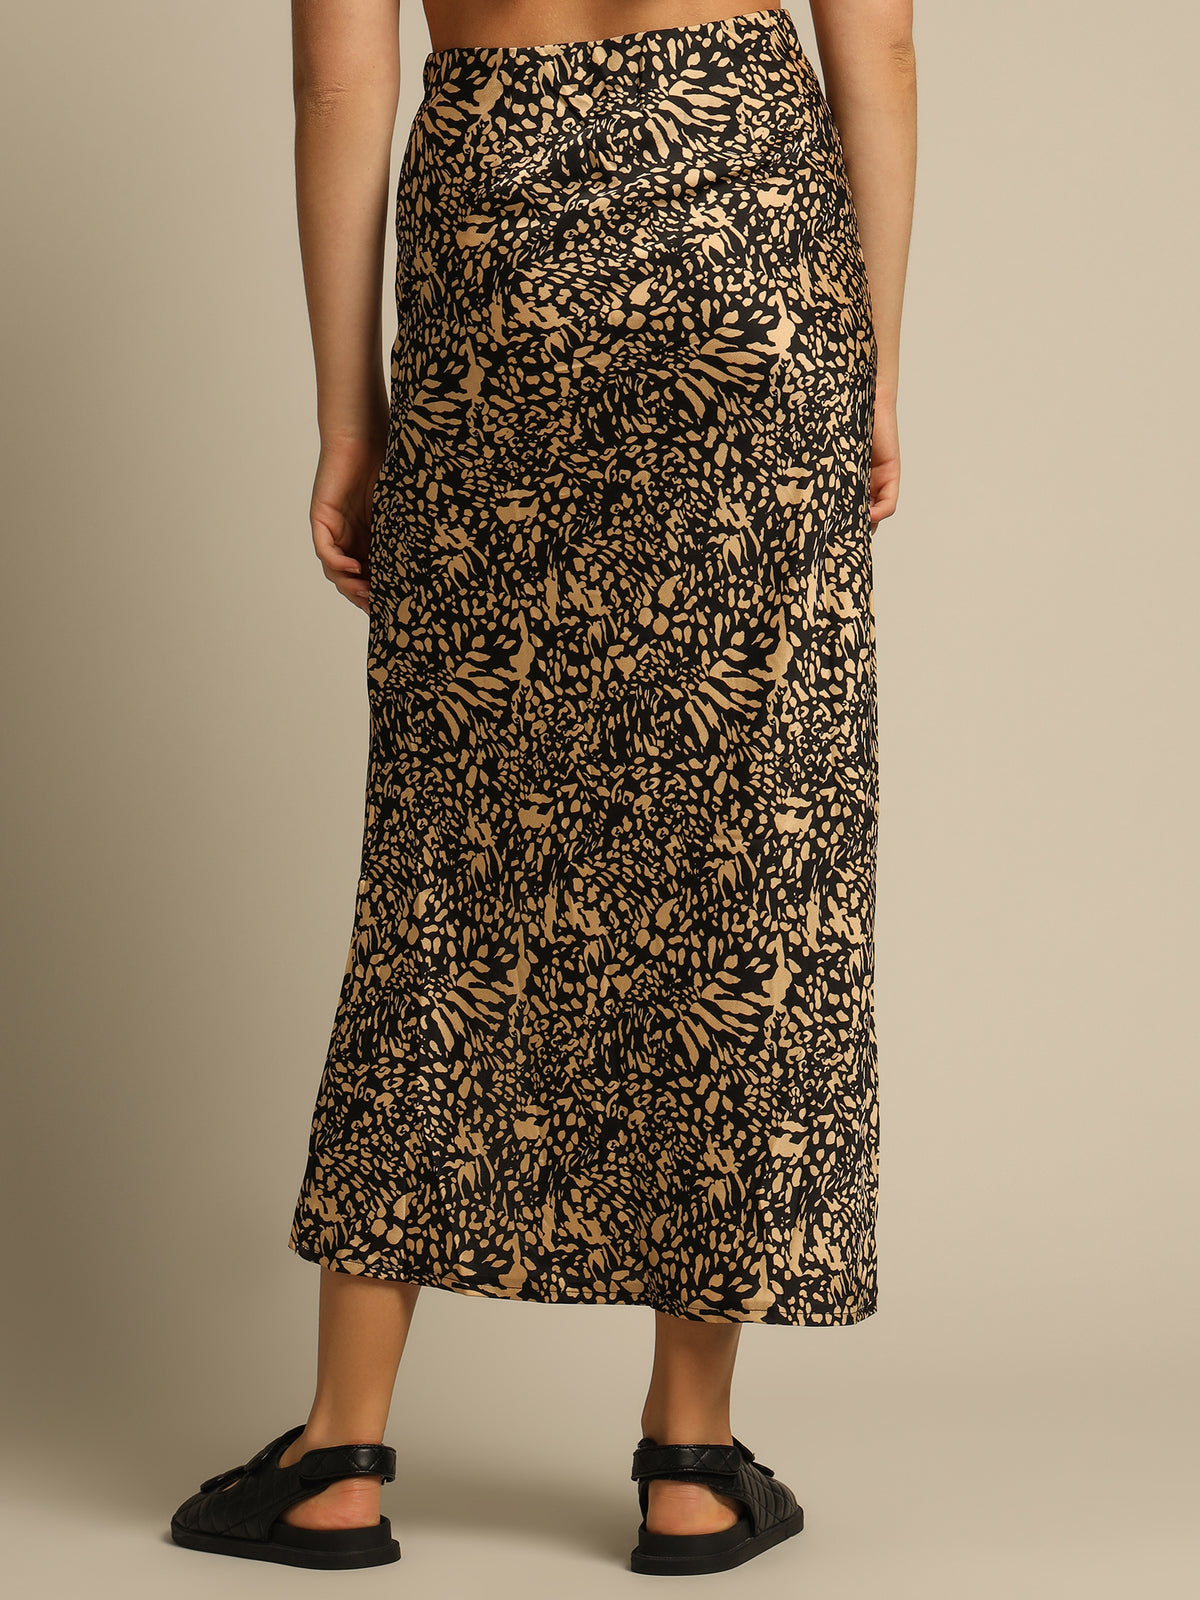 Shanti Maxi Skirt in Leopard